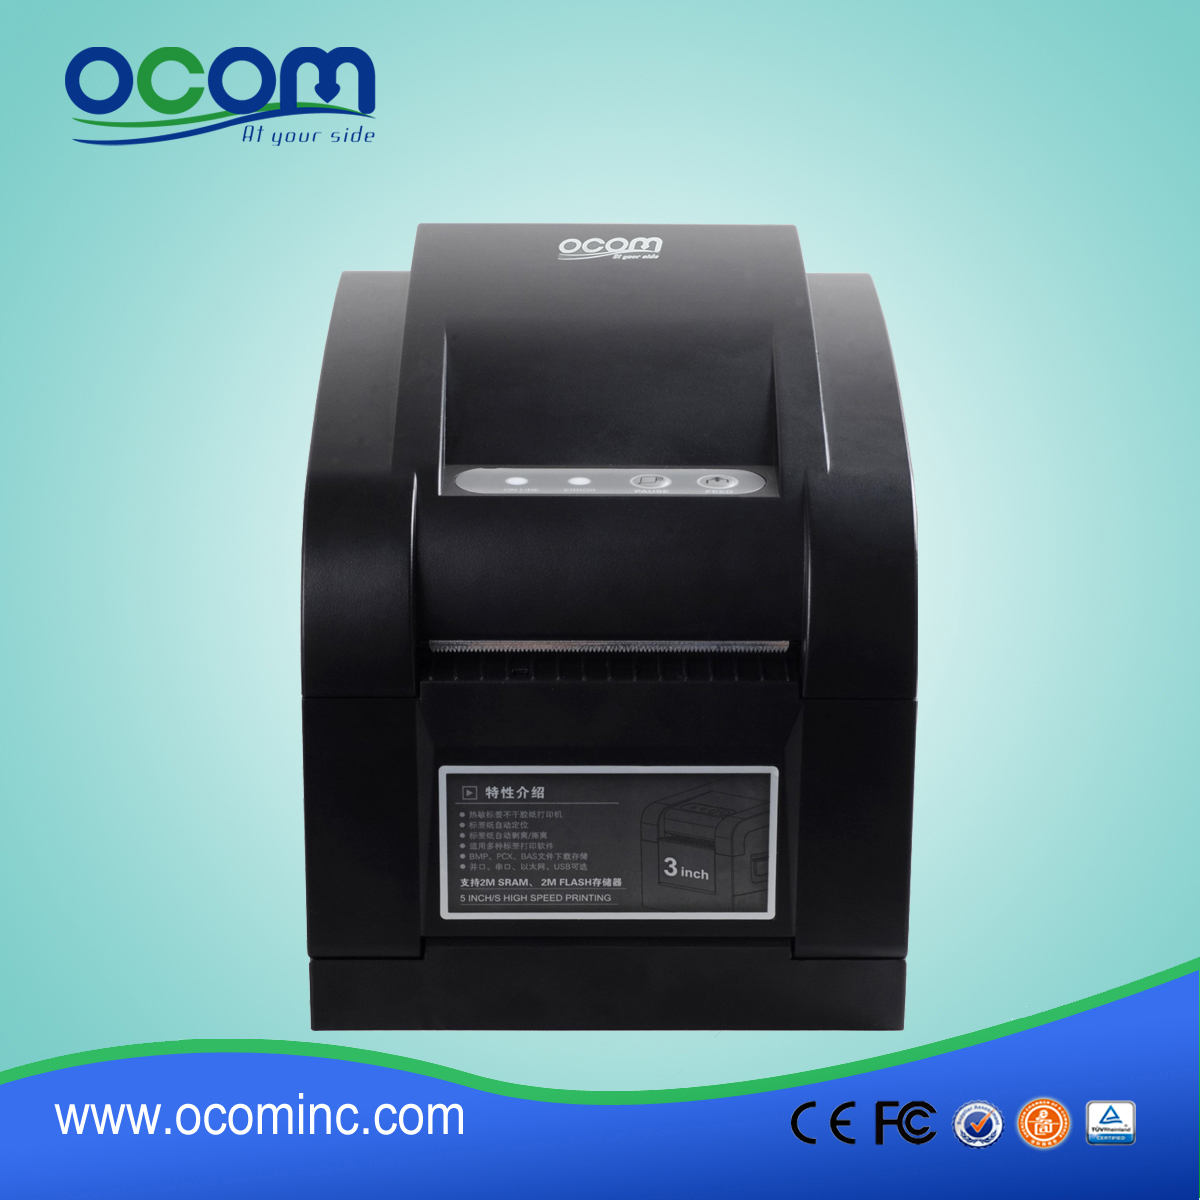 أوكب-005 جودة عالية السعر الباركود تسمية آلة الطباعة